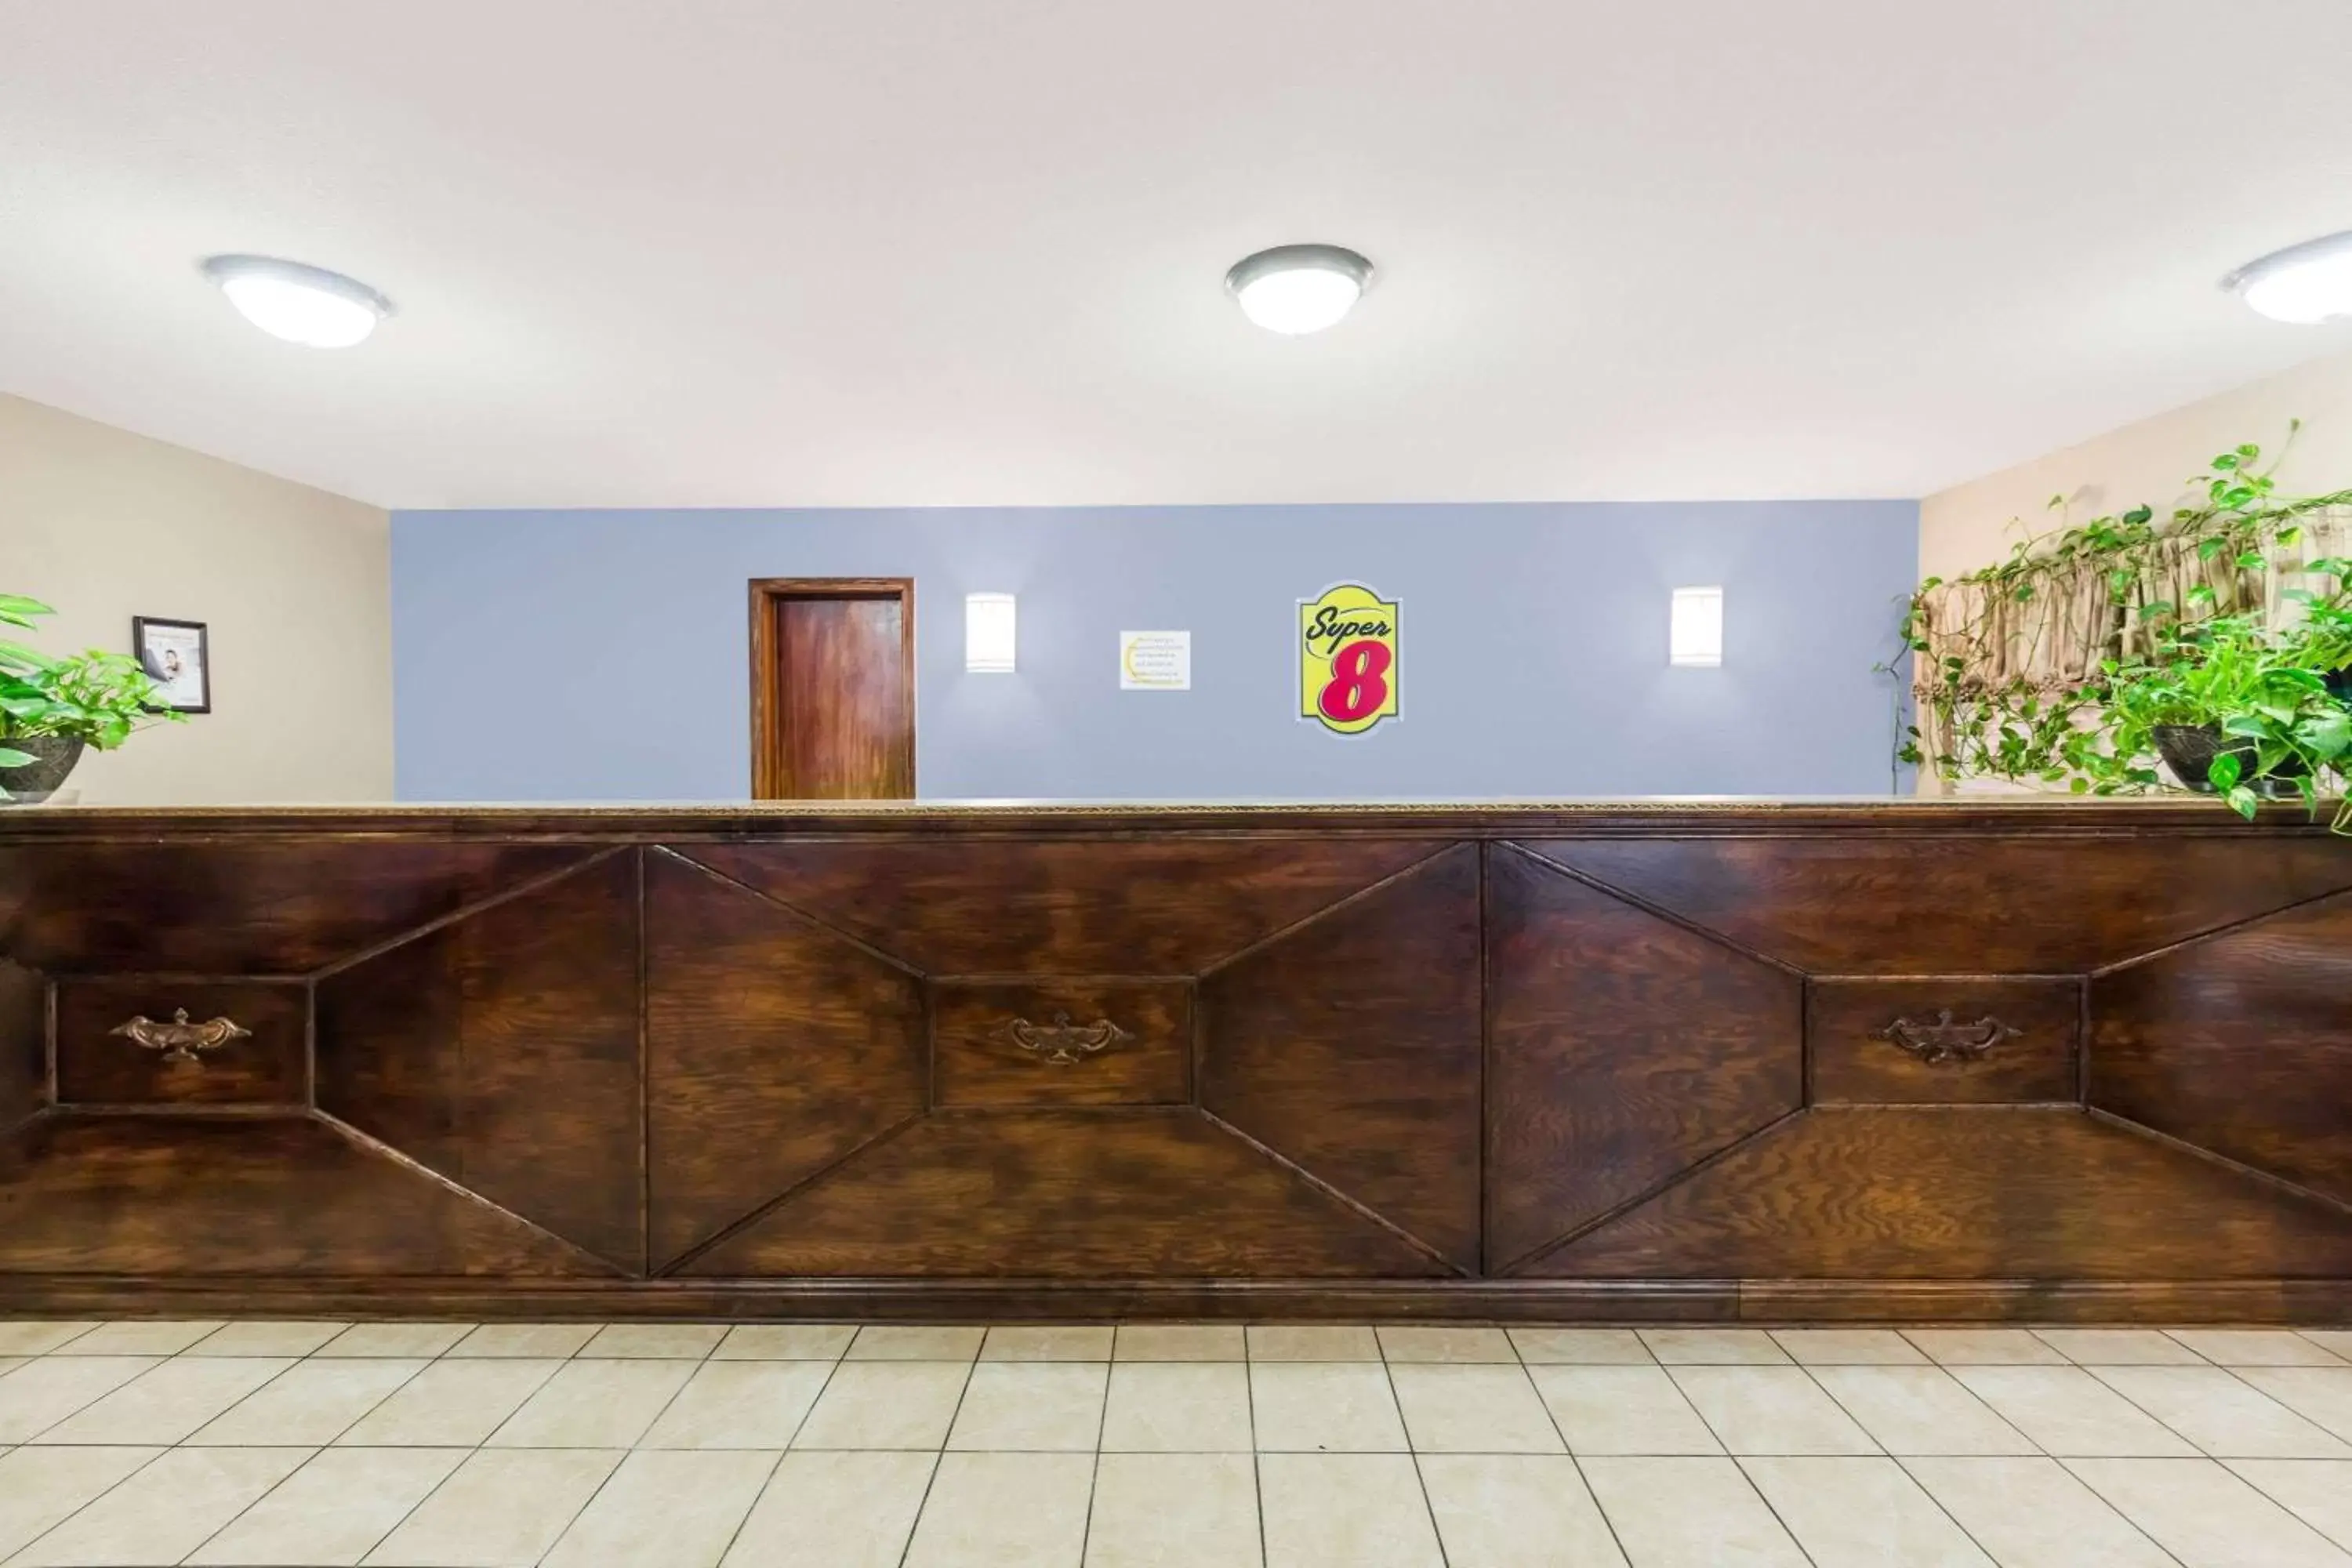 Lobby or reception, Lobby/Reception in Super 8 by Wyndham Jonesboro